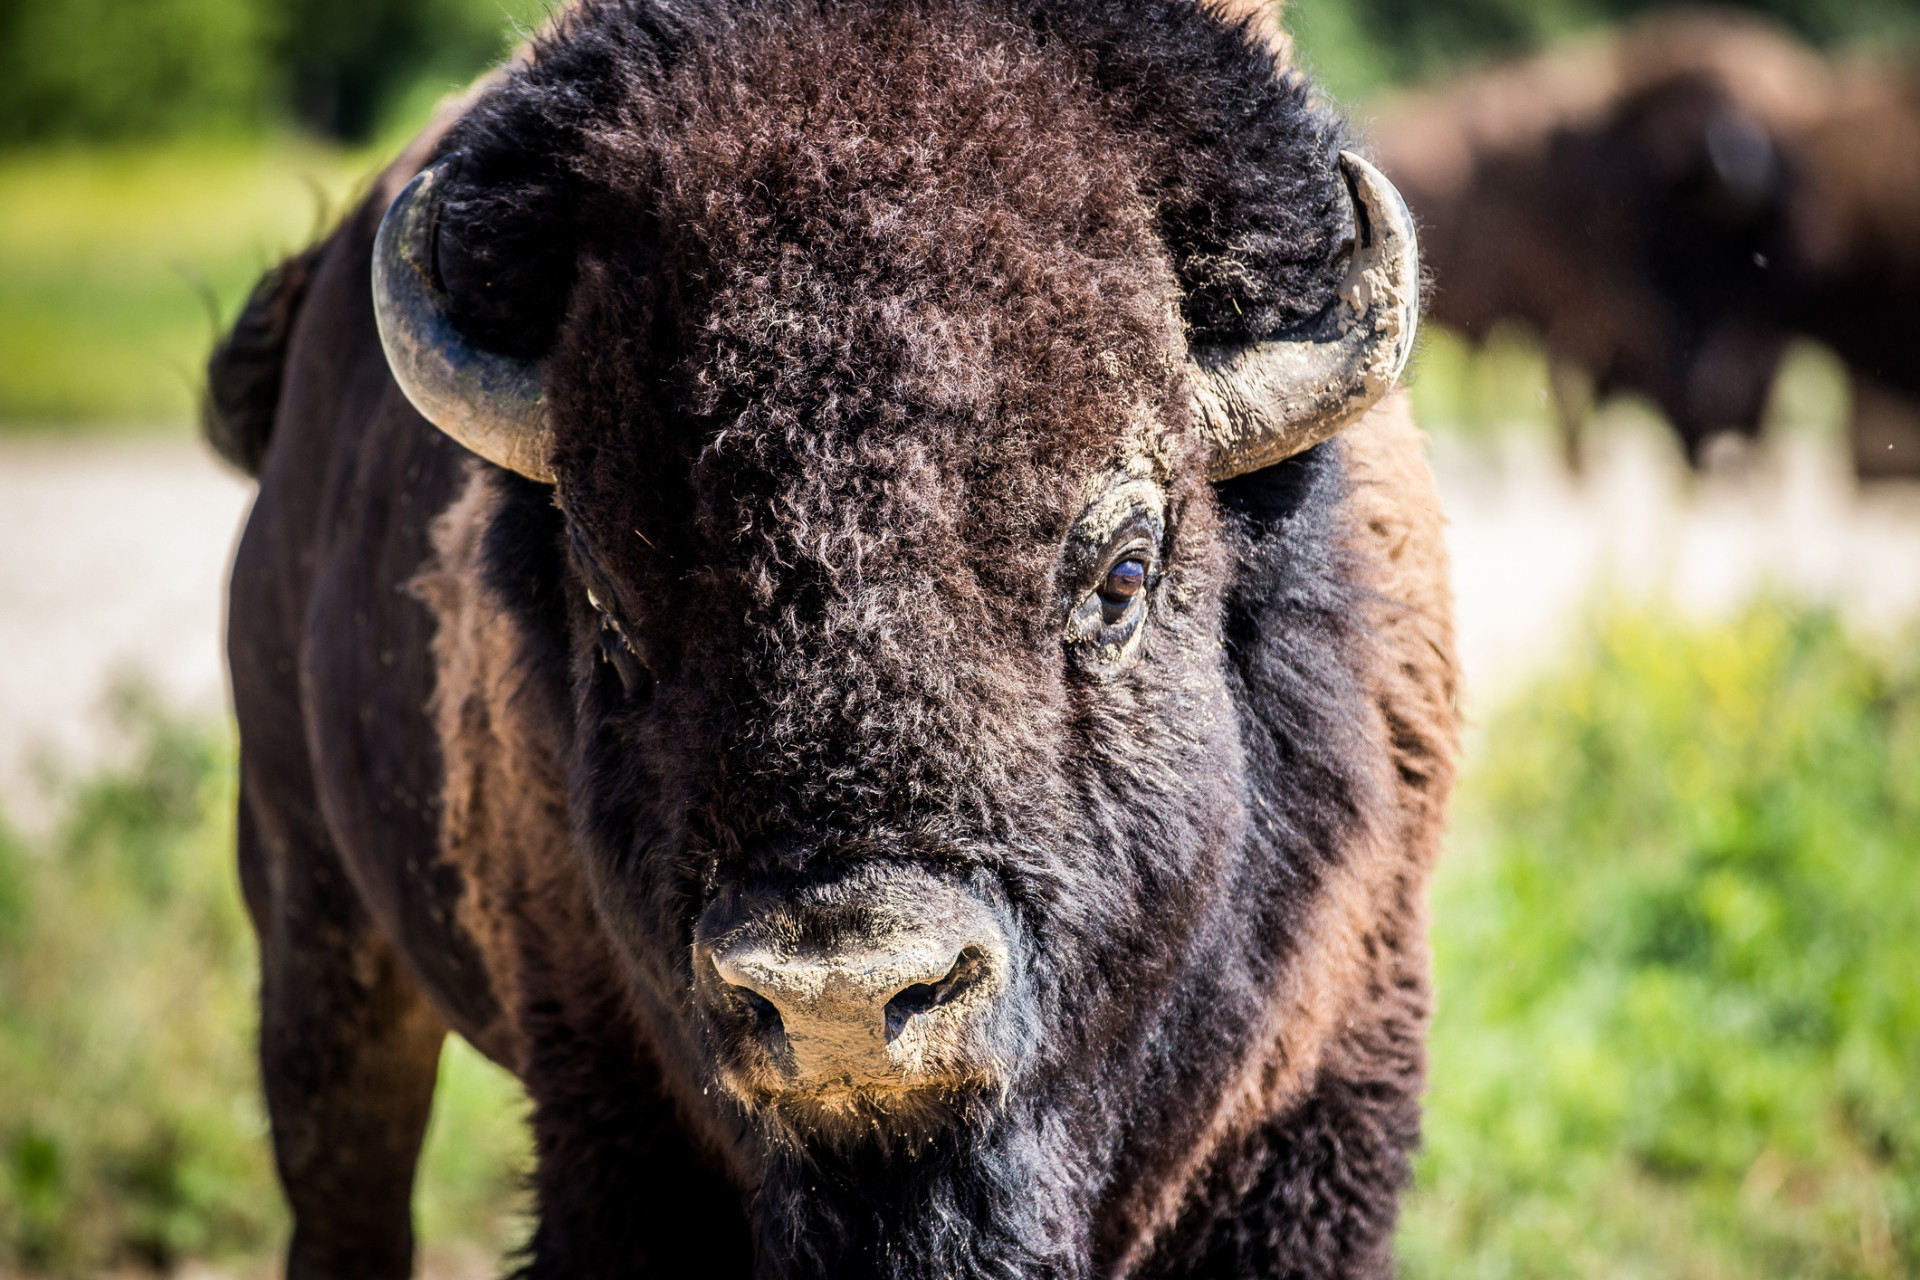 Les principales visites d'observation de bisons sur l'île sont organisées par Catalina Island Conservancy, Catalina Adventure Tours et Santa Catalina Island Company.